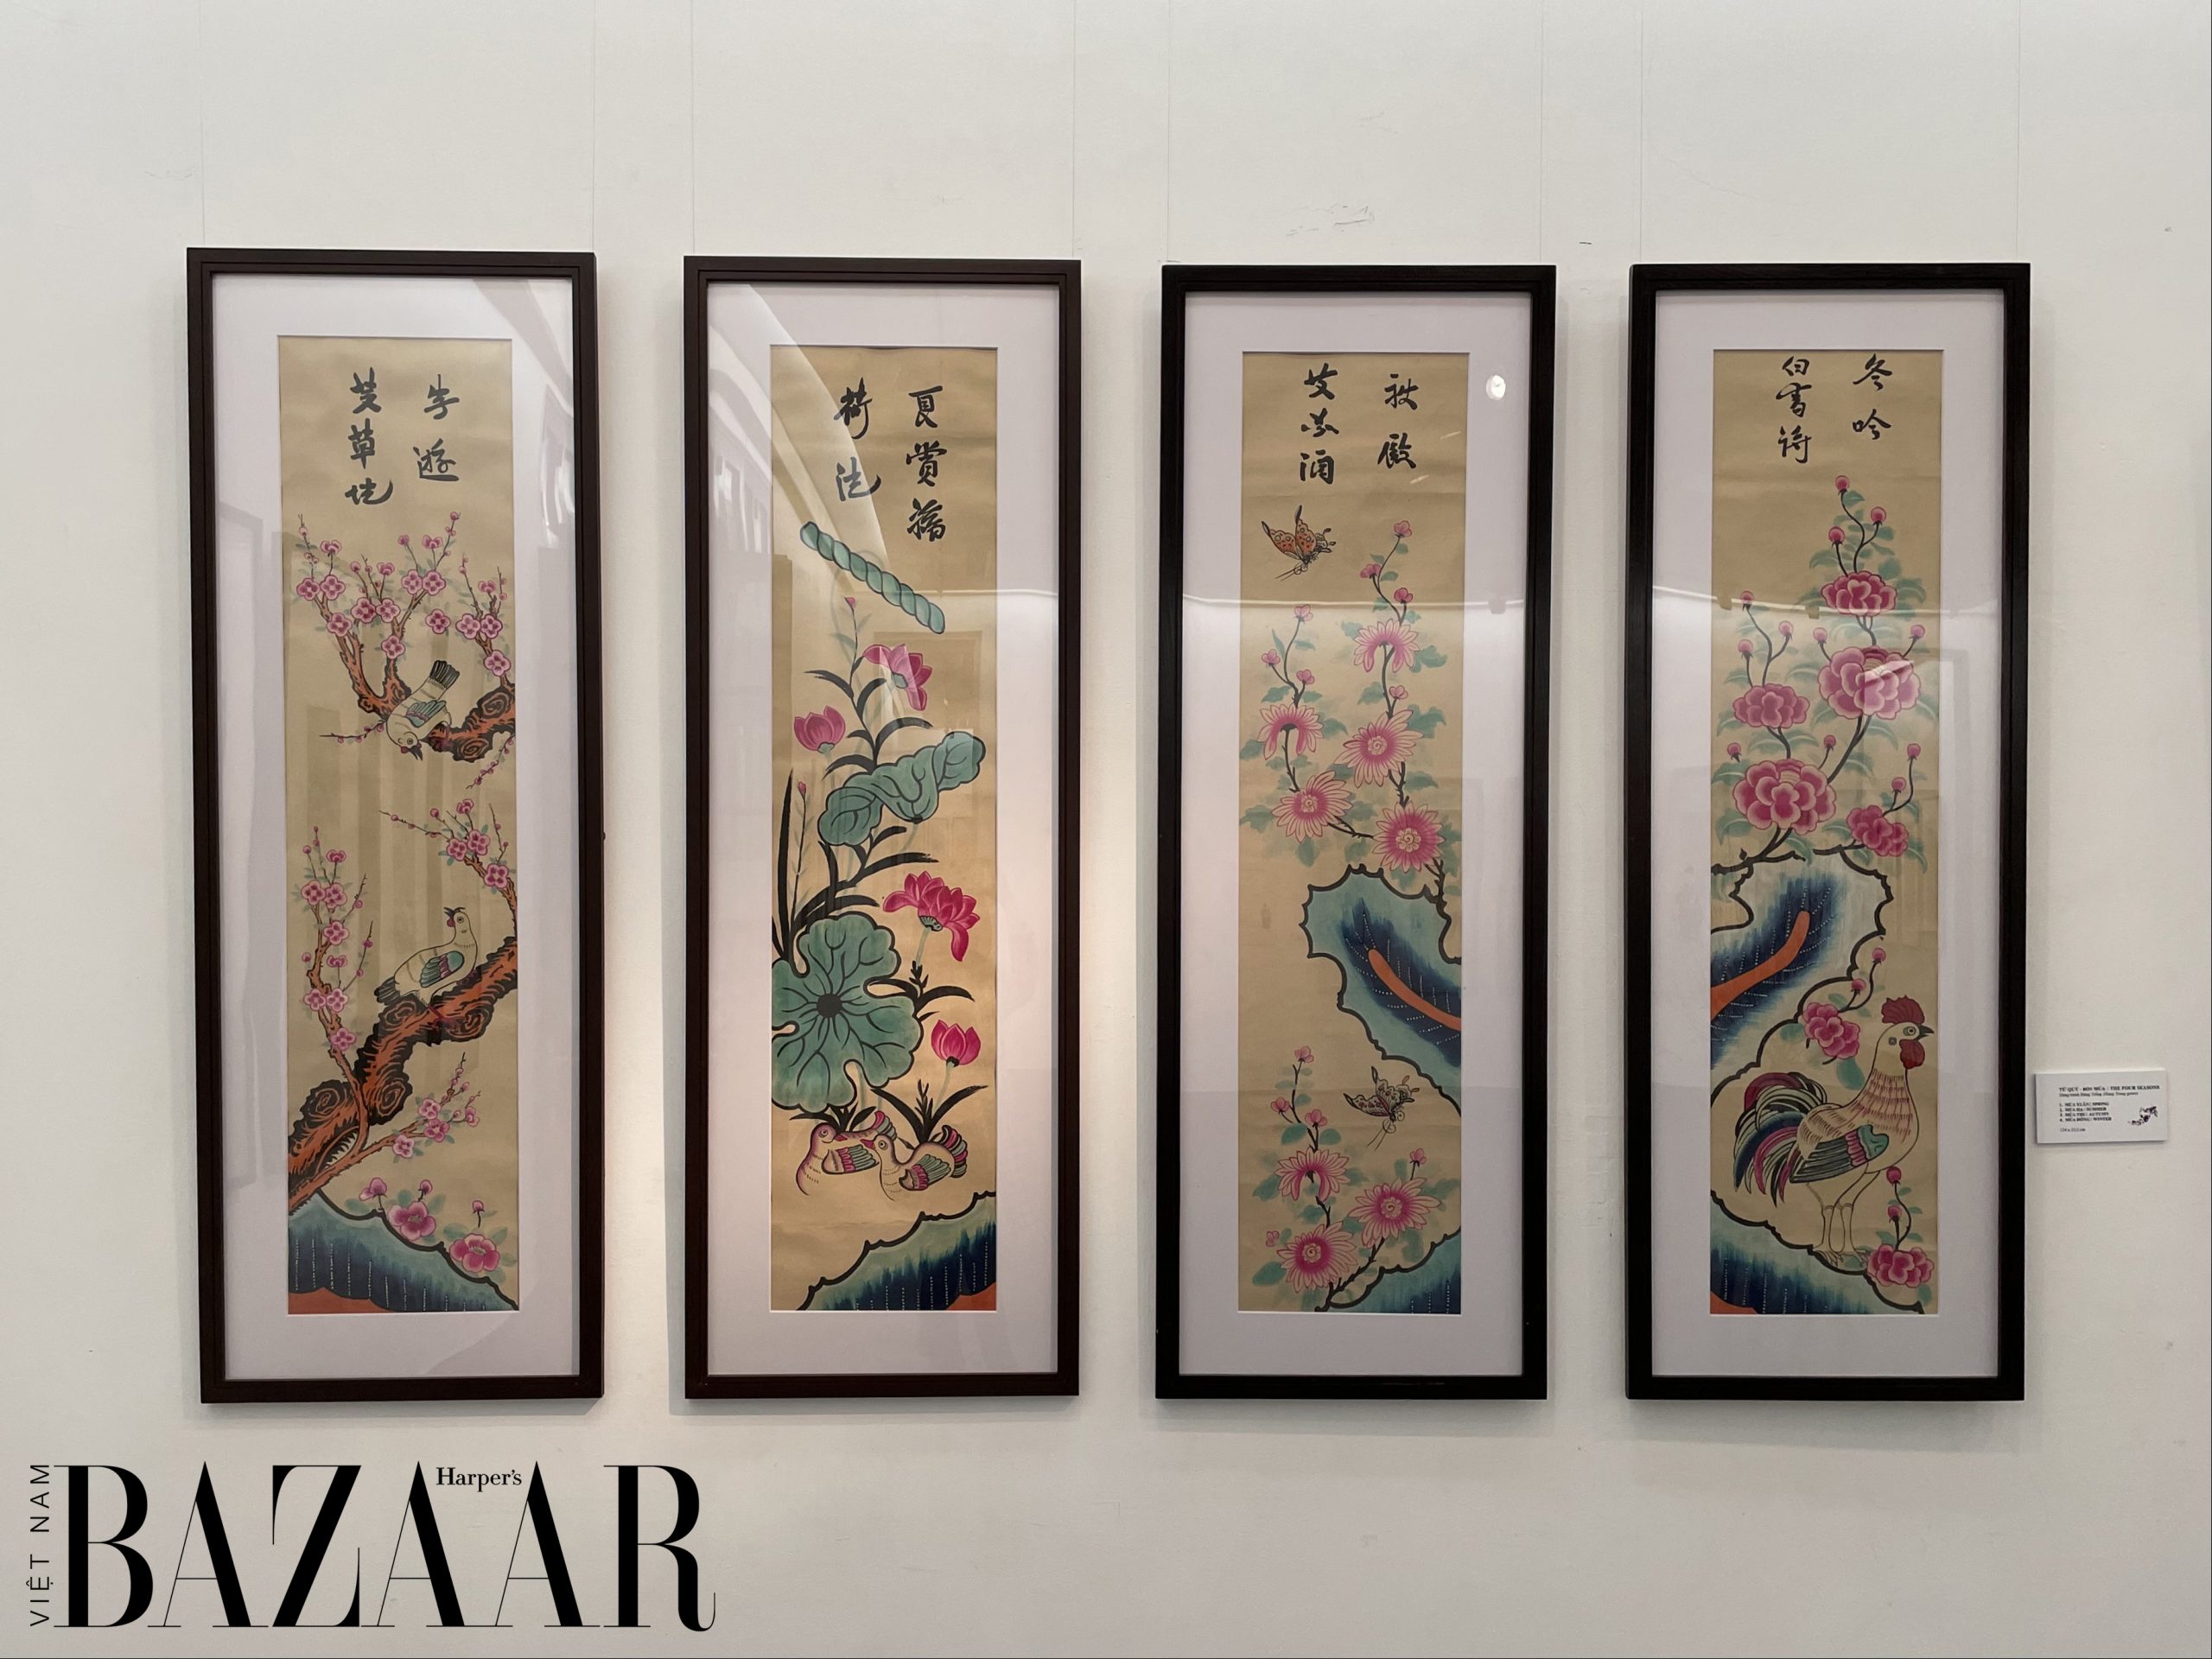 Harper's Bazaar_triển lãm Sắc Xuân Bảo tàng mỹ thuật Việt Nam_04